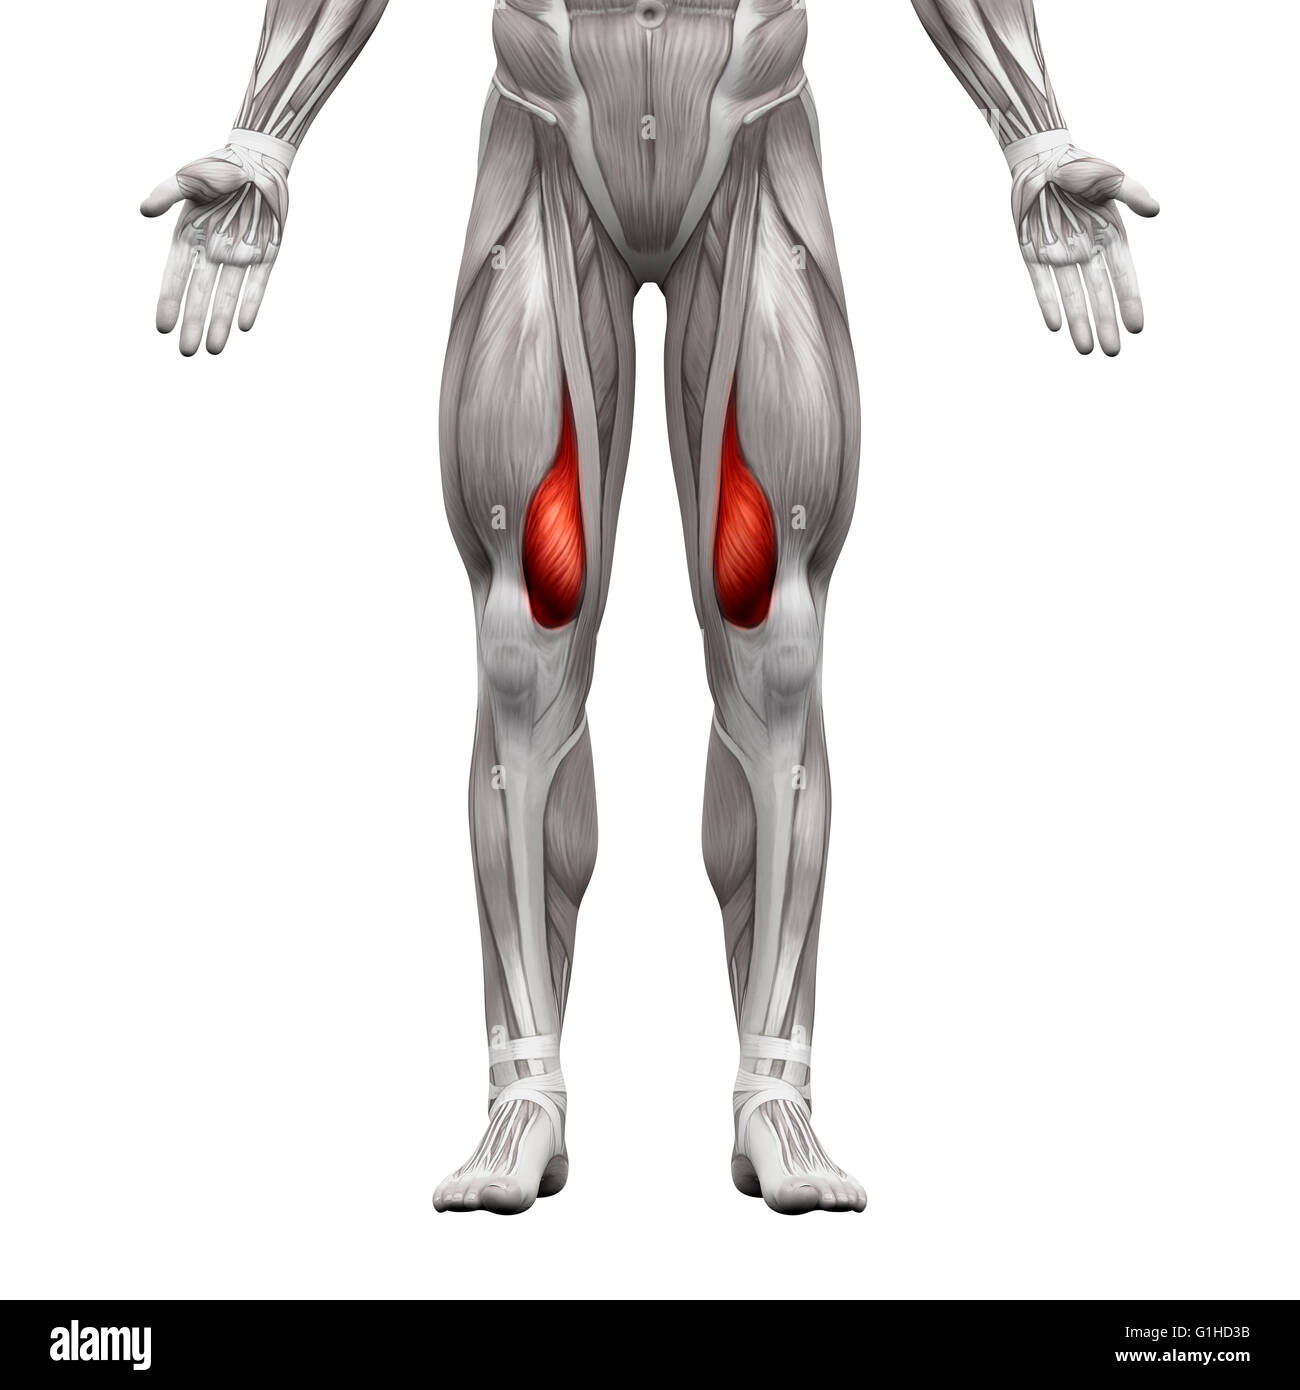 Vastus Medialis Muskel - isoliert Anatomie Muskeln auf weiss - 3D-Illustration Stockfoto